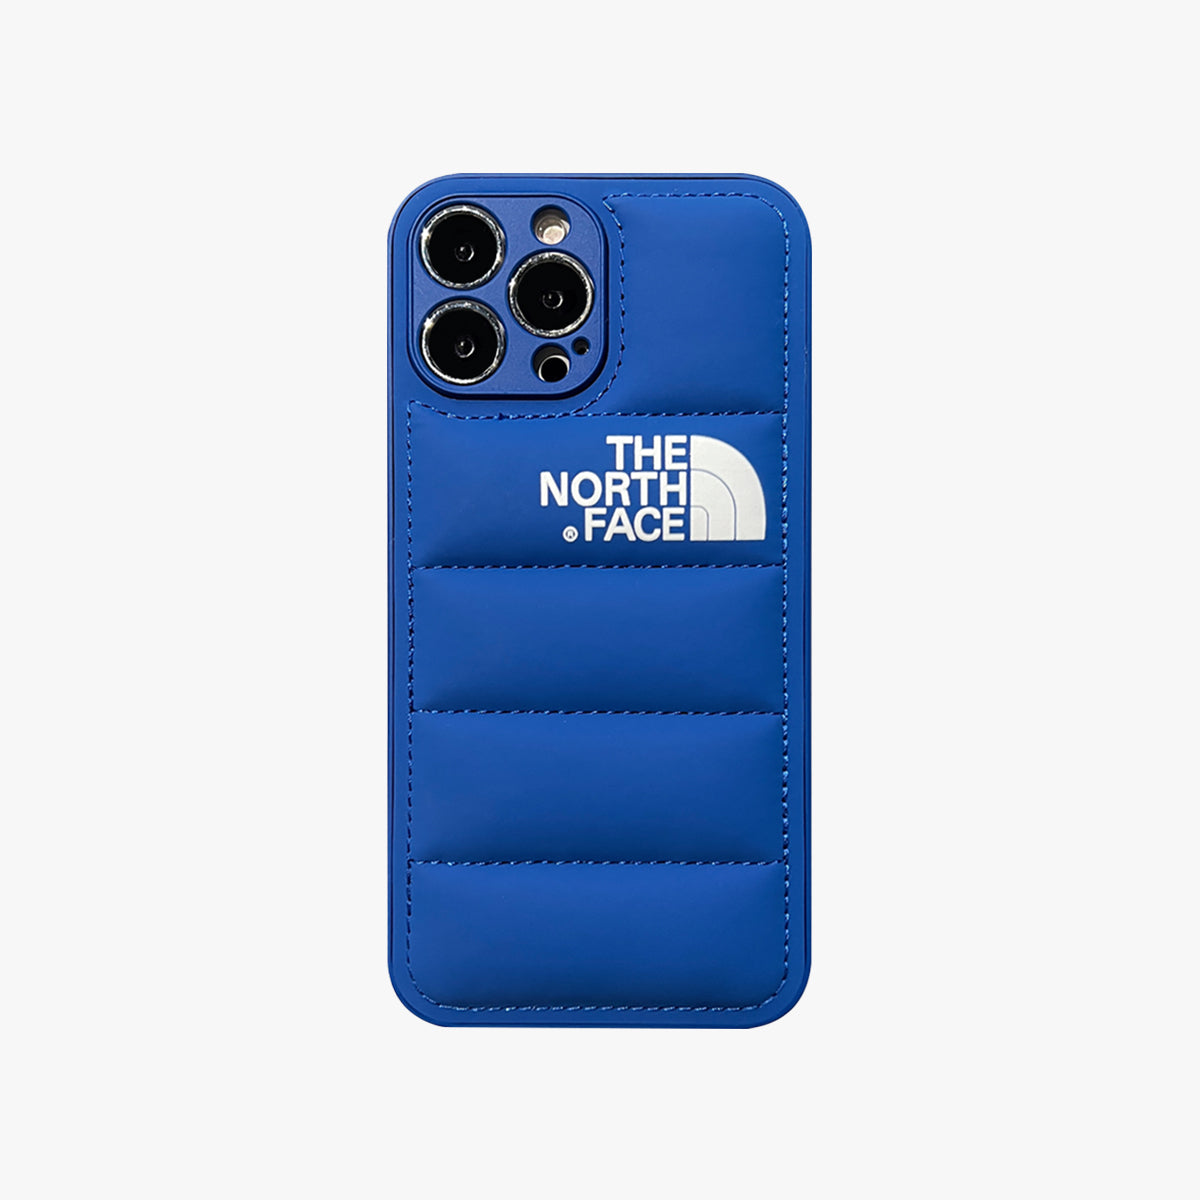 3D Phone Case